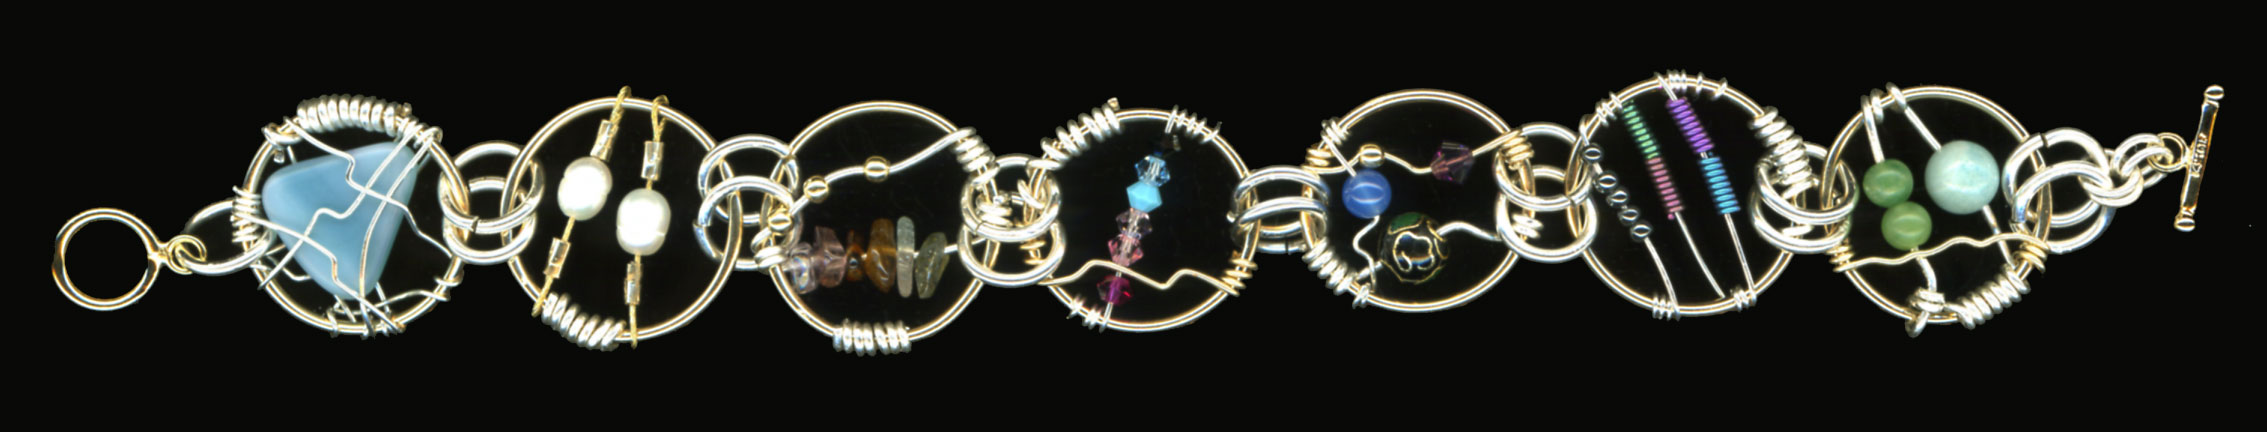 Wire Wrap Bracelets. Sterling, 2006-08